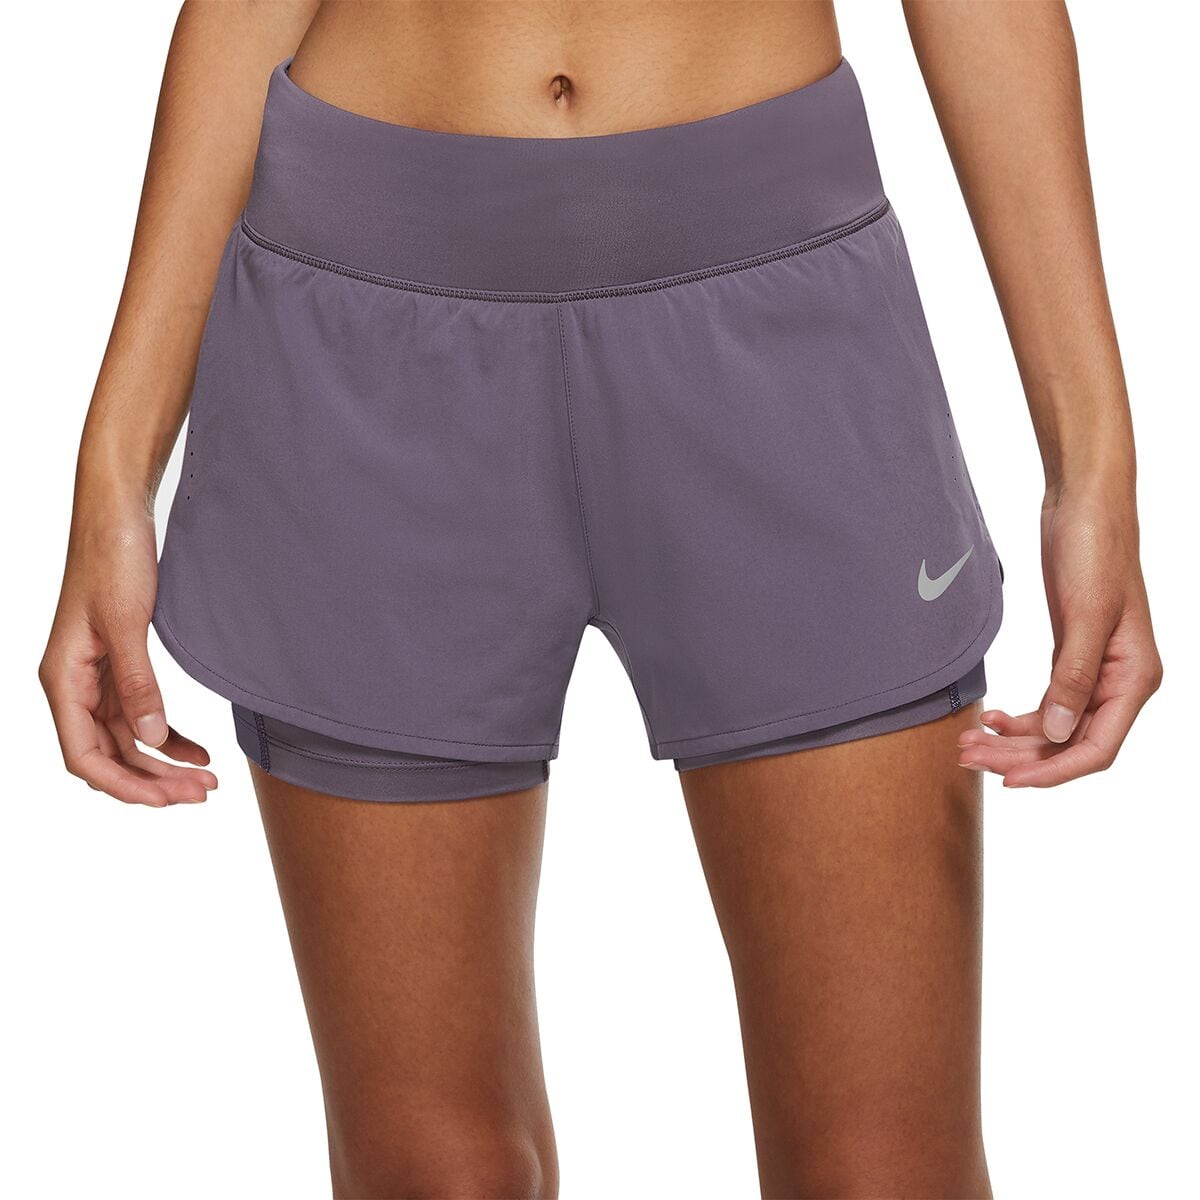 Welsprekend Faculteit Kelder Nike Eclipse 2-in-1 Short - Women's - Clothing